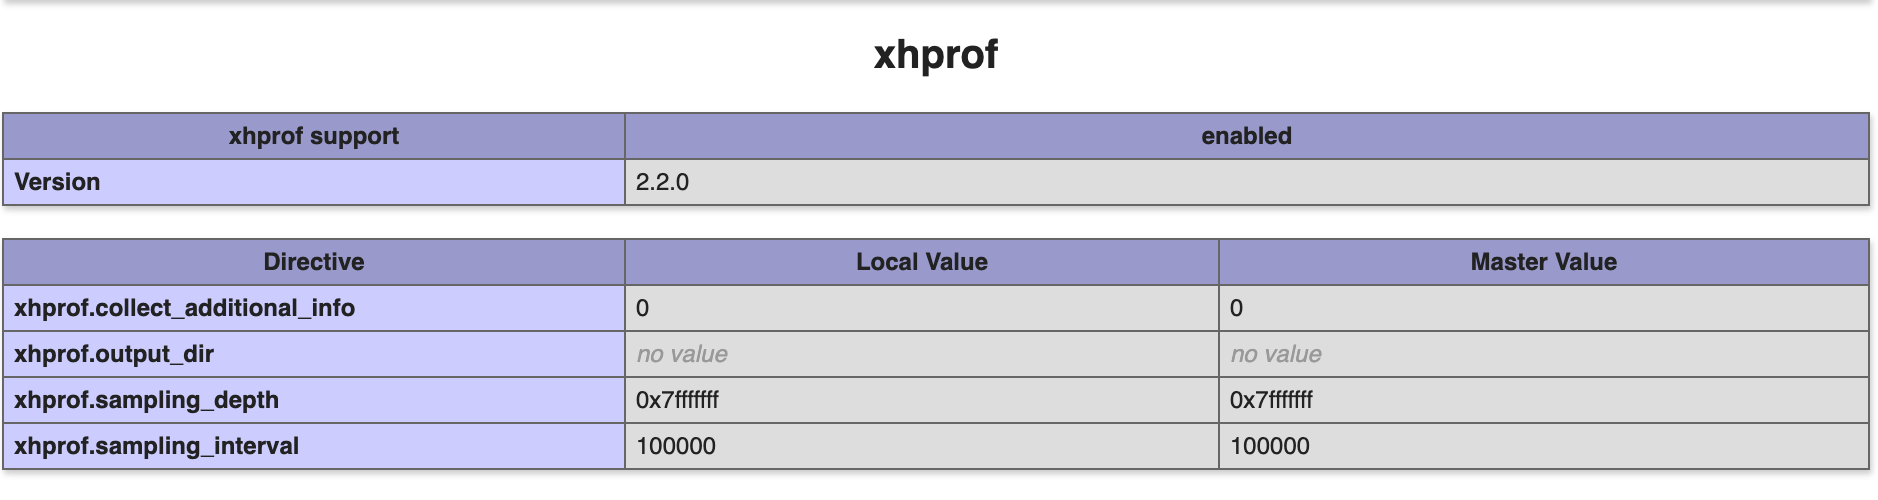 L'extension Xhprof est activé